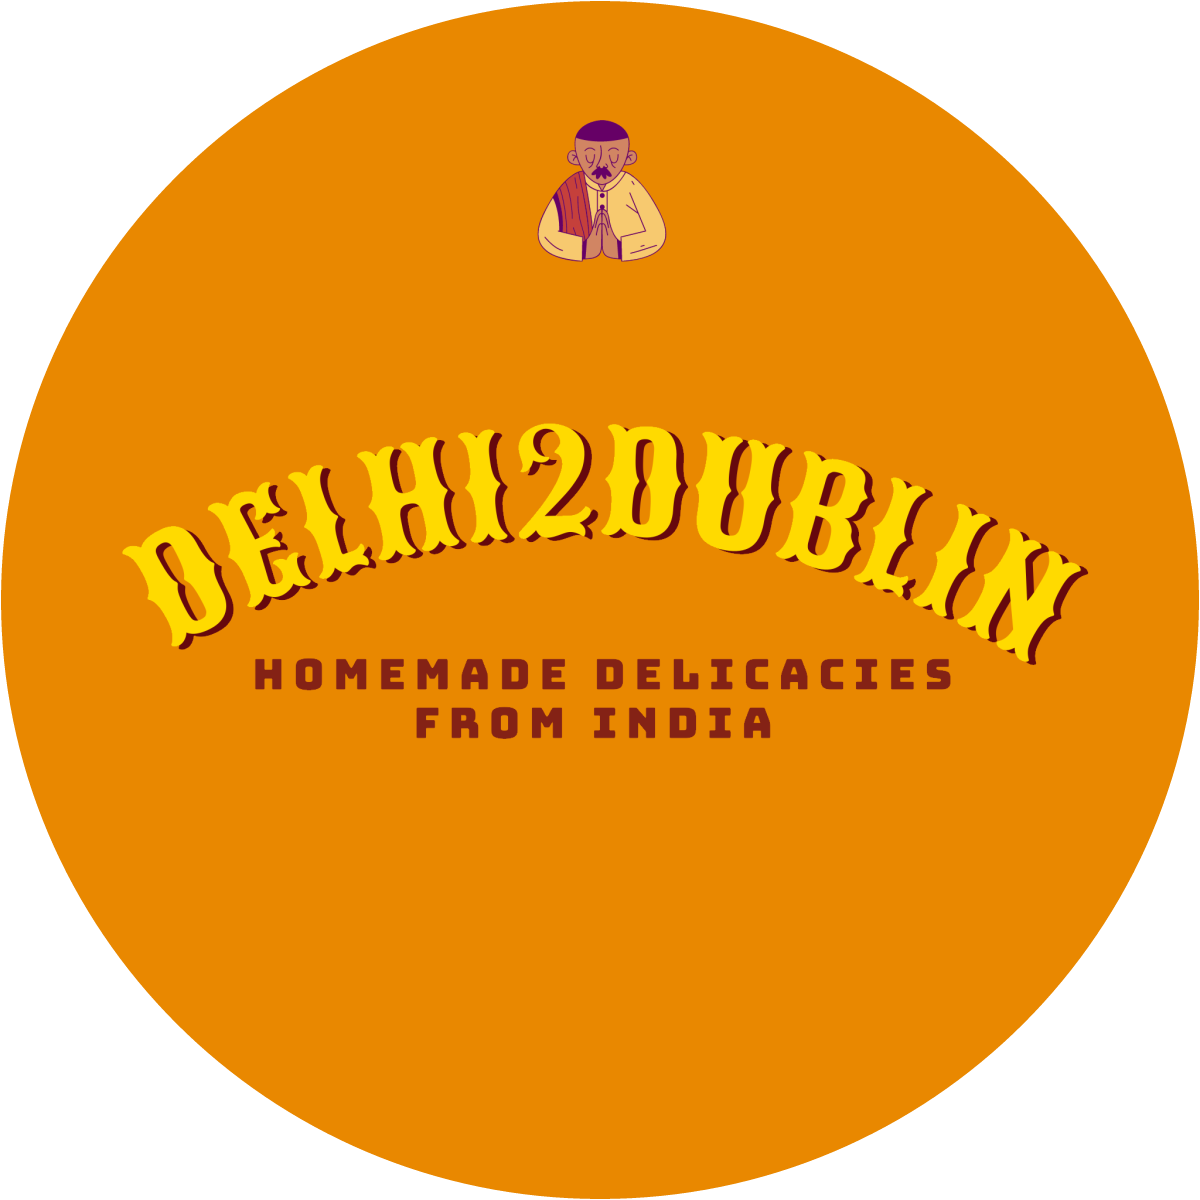 Delhi2Dublin